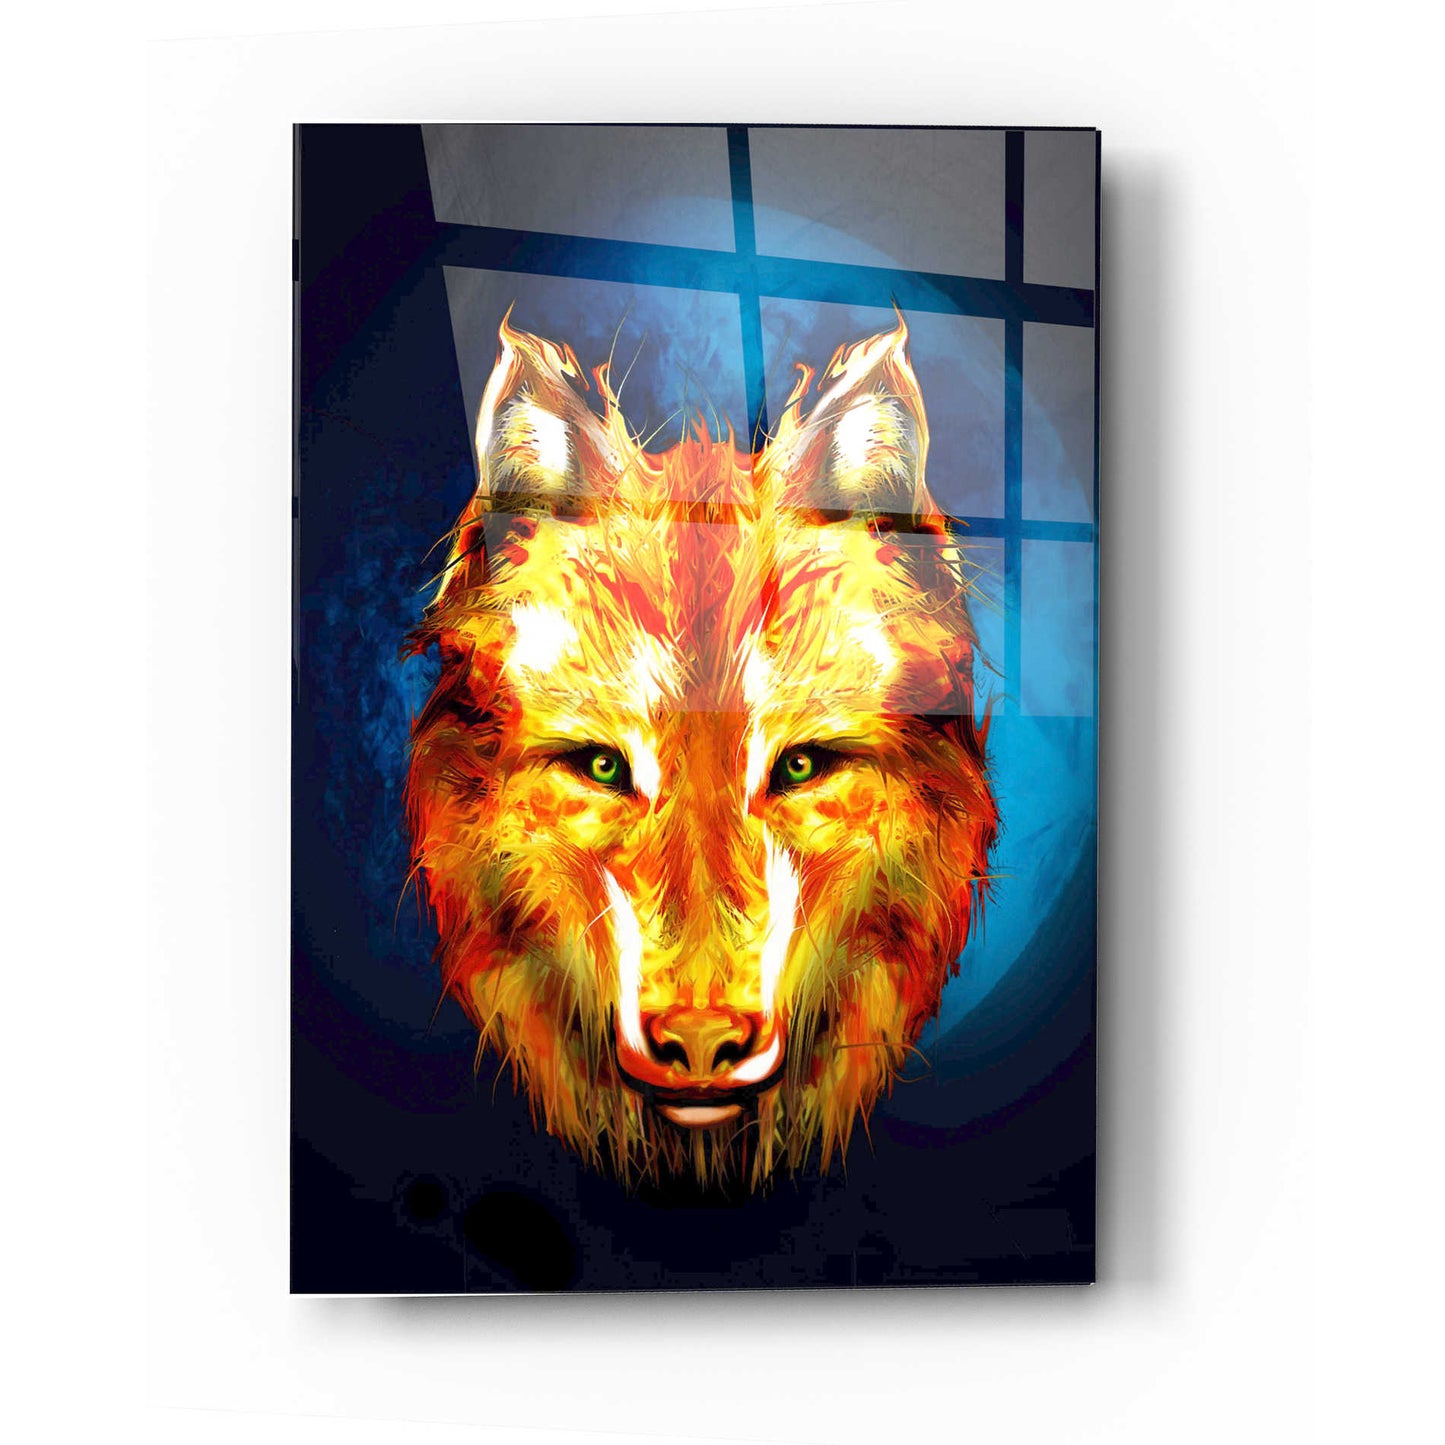 Epic Art 'Lone Wolf' by Michael Stewart, Acrylic Glass Wall Art,12x16